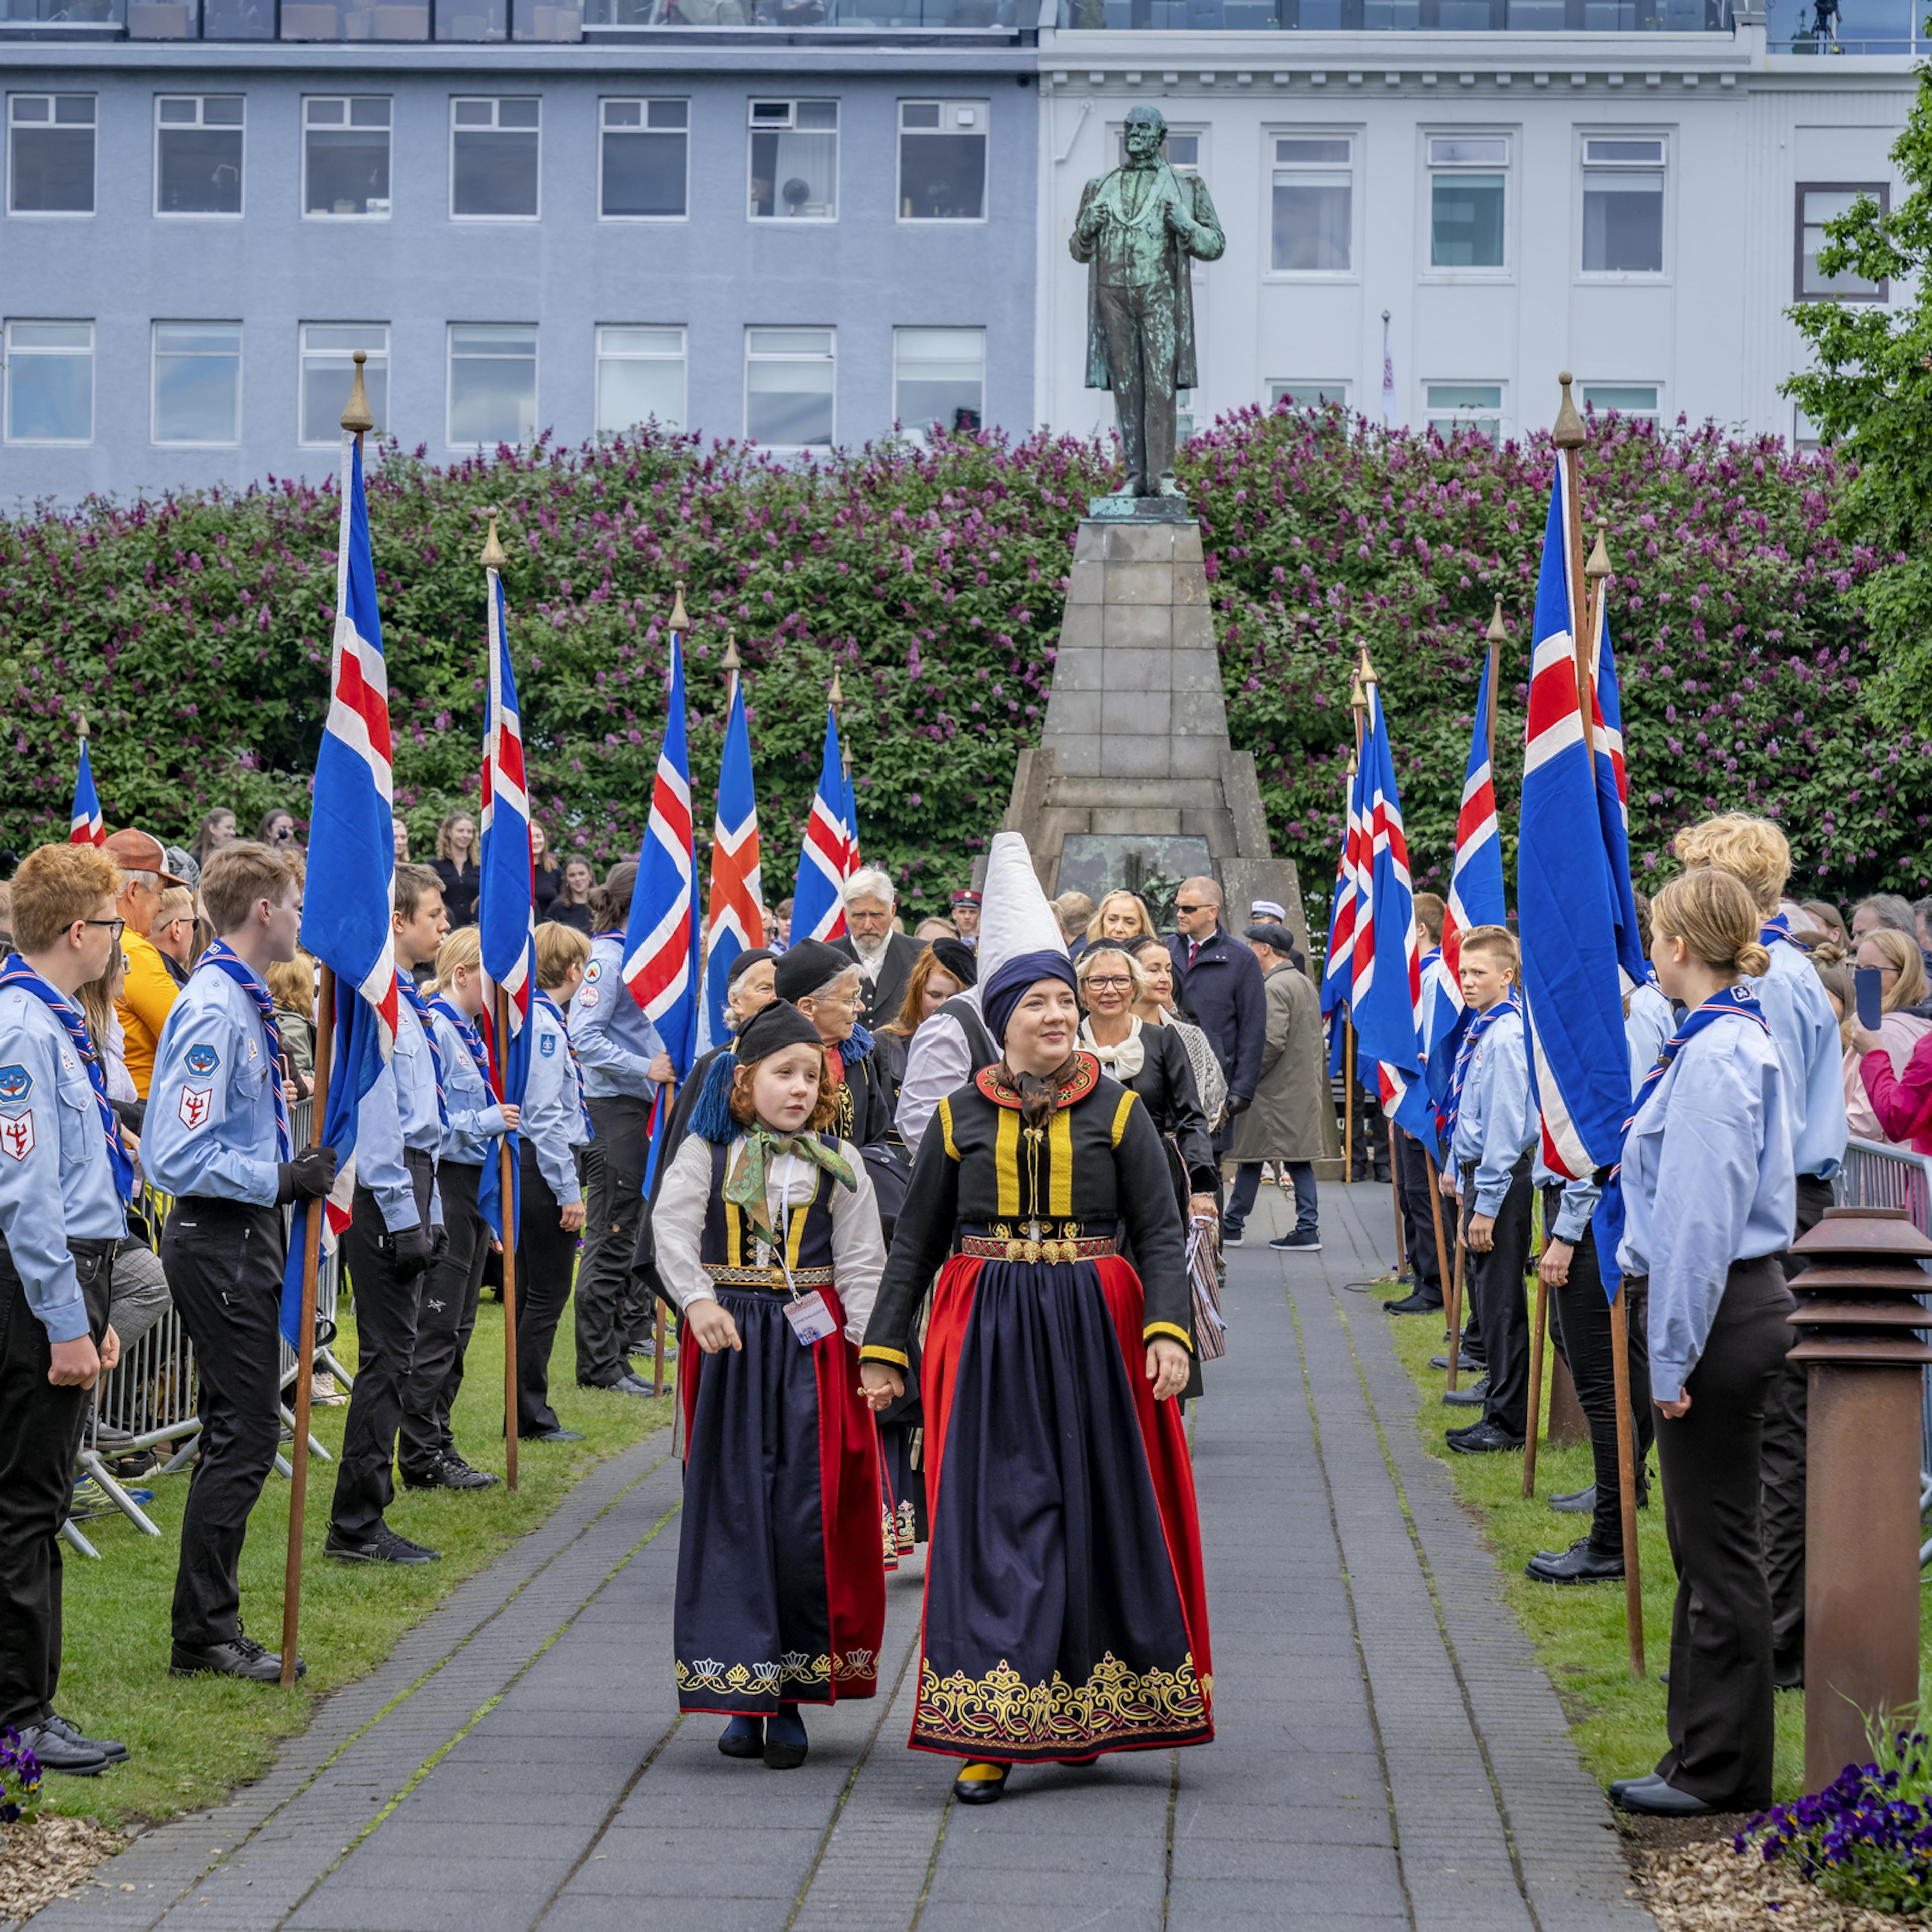 National Day 17 June in Reykjavik